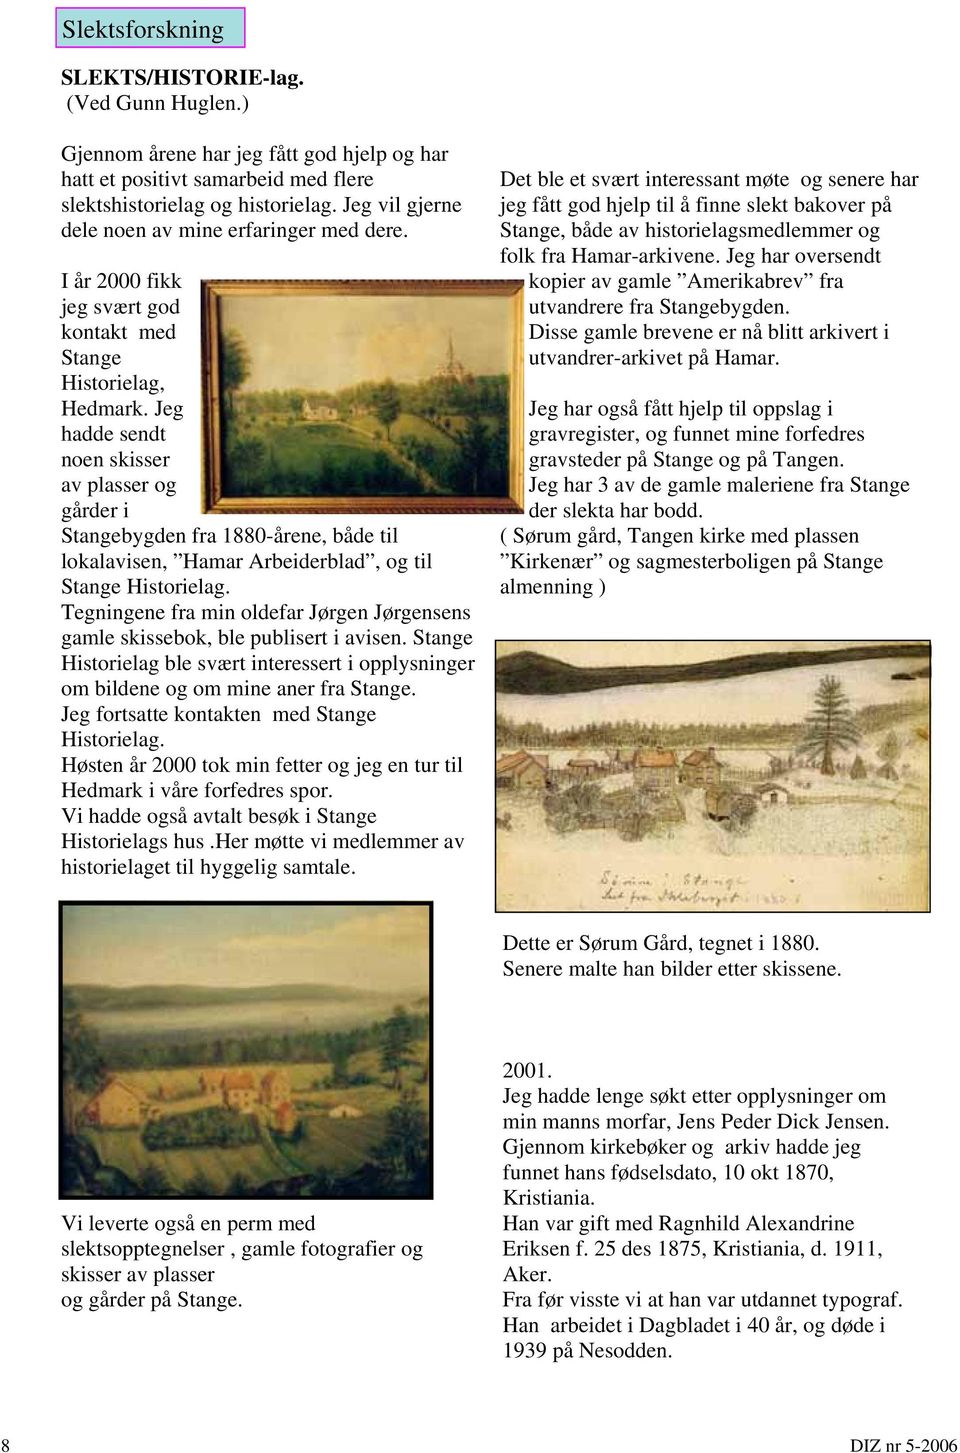 Jeg hadde sendt noen skisser av plasser og gårder i Stangebygden fra 1880-årene, både til lokalavisen, Hamar Arbeiderblad, og til Stange Historielag.